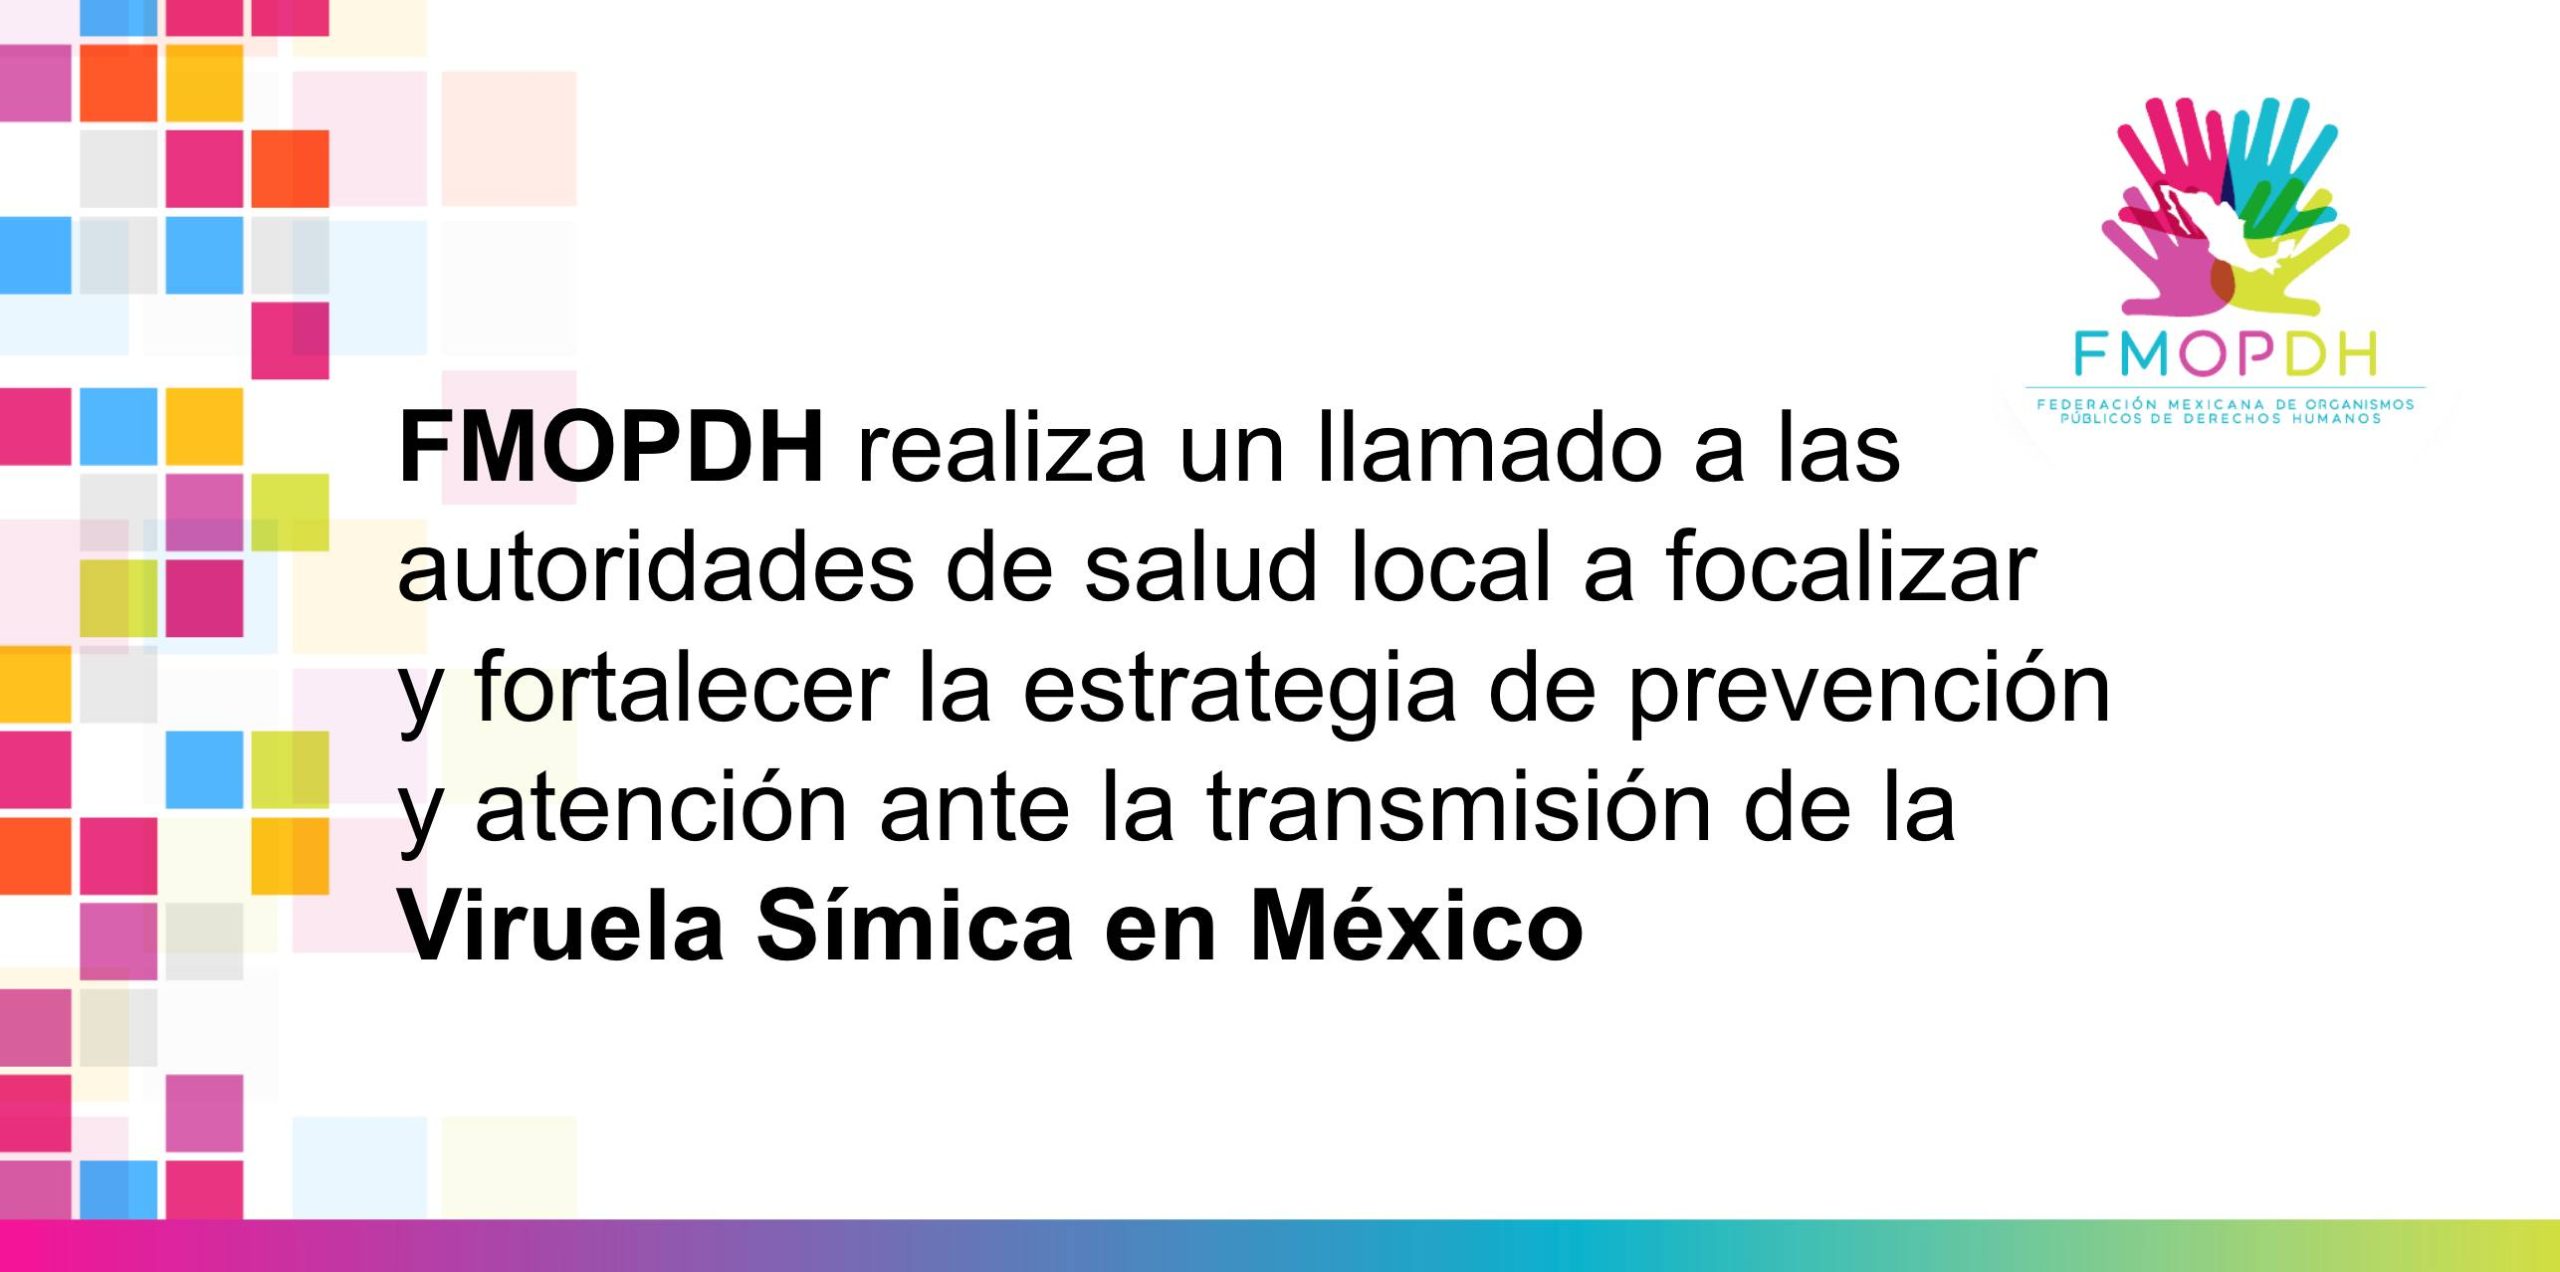 FMOPDH realiza un llamado a las autoridades de salud local a focalizar y fortalecer la estrategia de prevención y atención ante la transmisión de la Viruela Símica en México